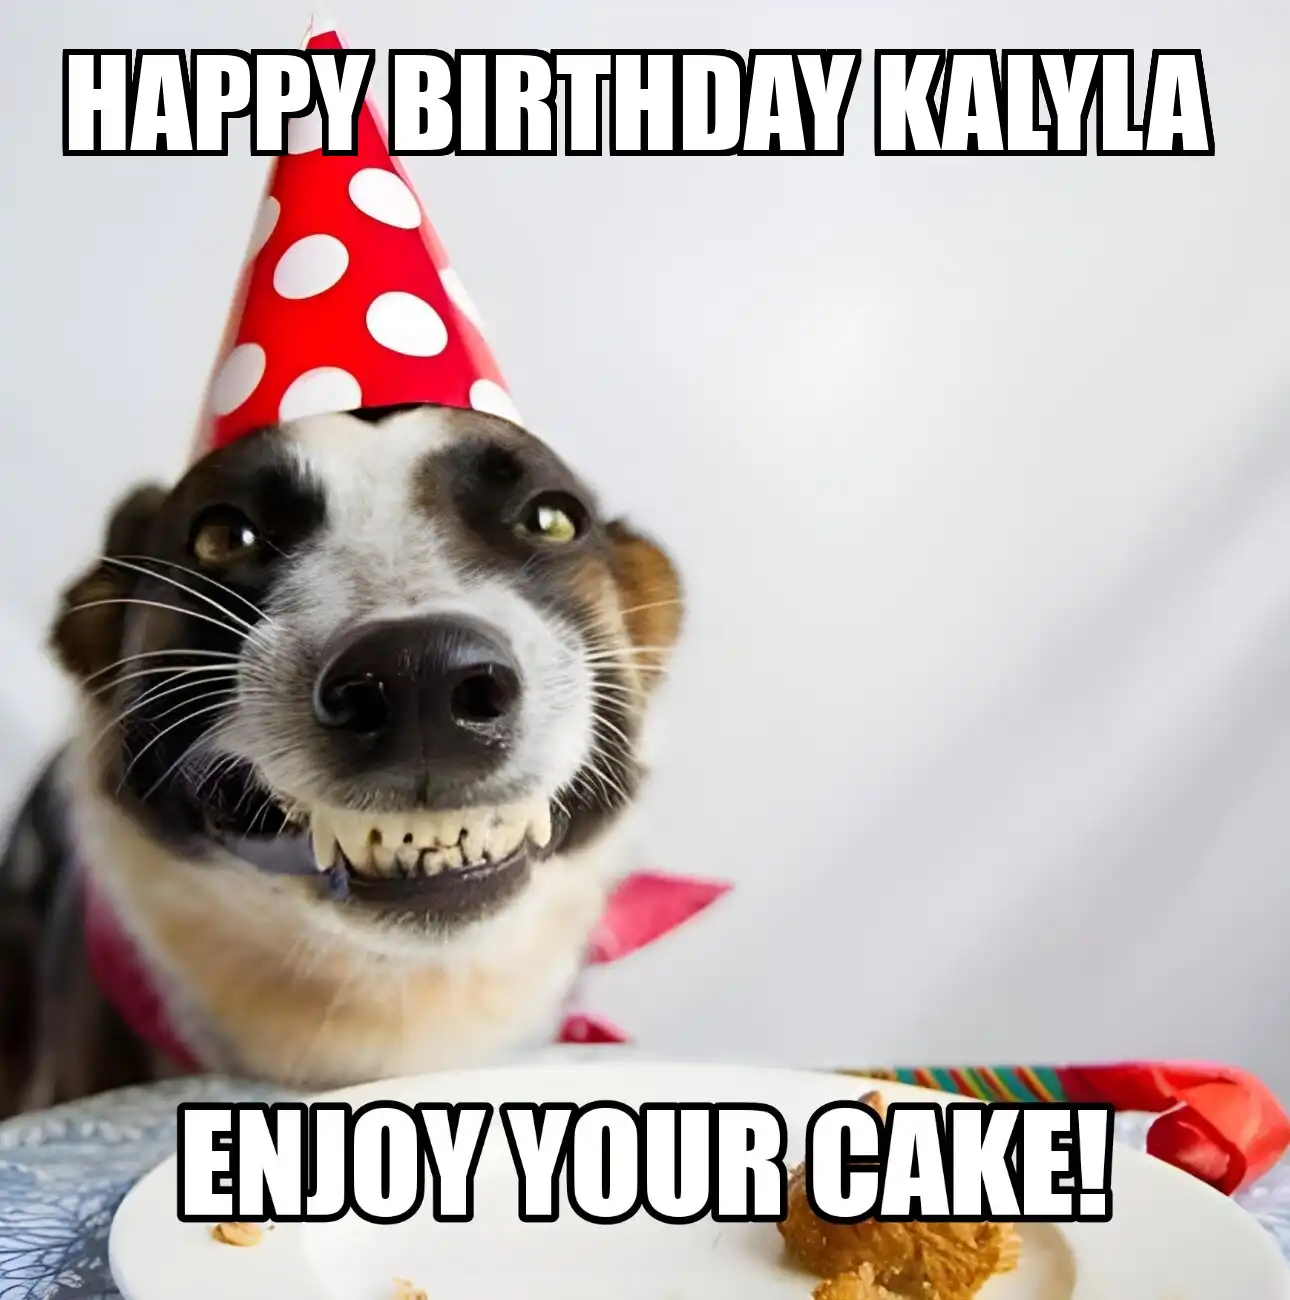 Happy Birthday Kalyla Enjoy Your Cake Dog Meme